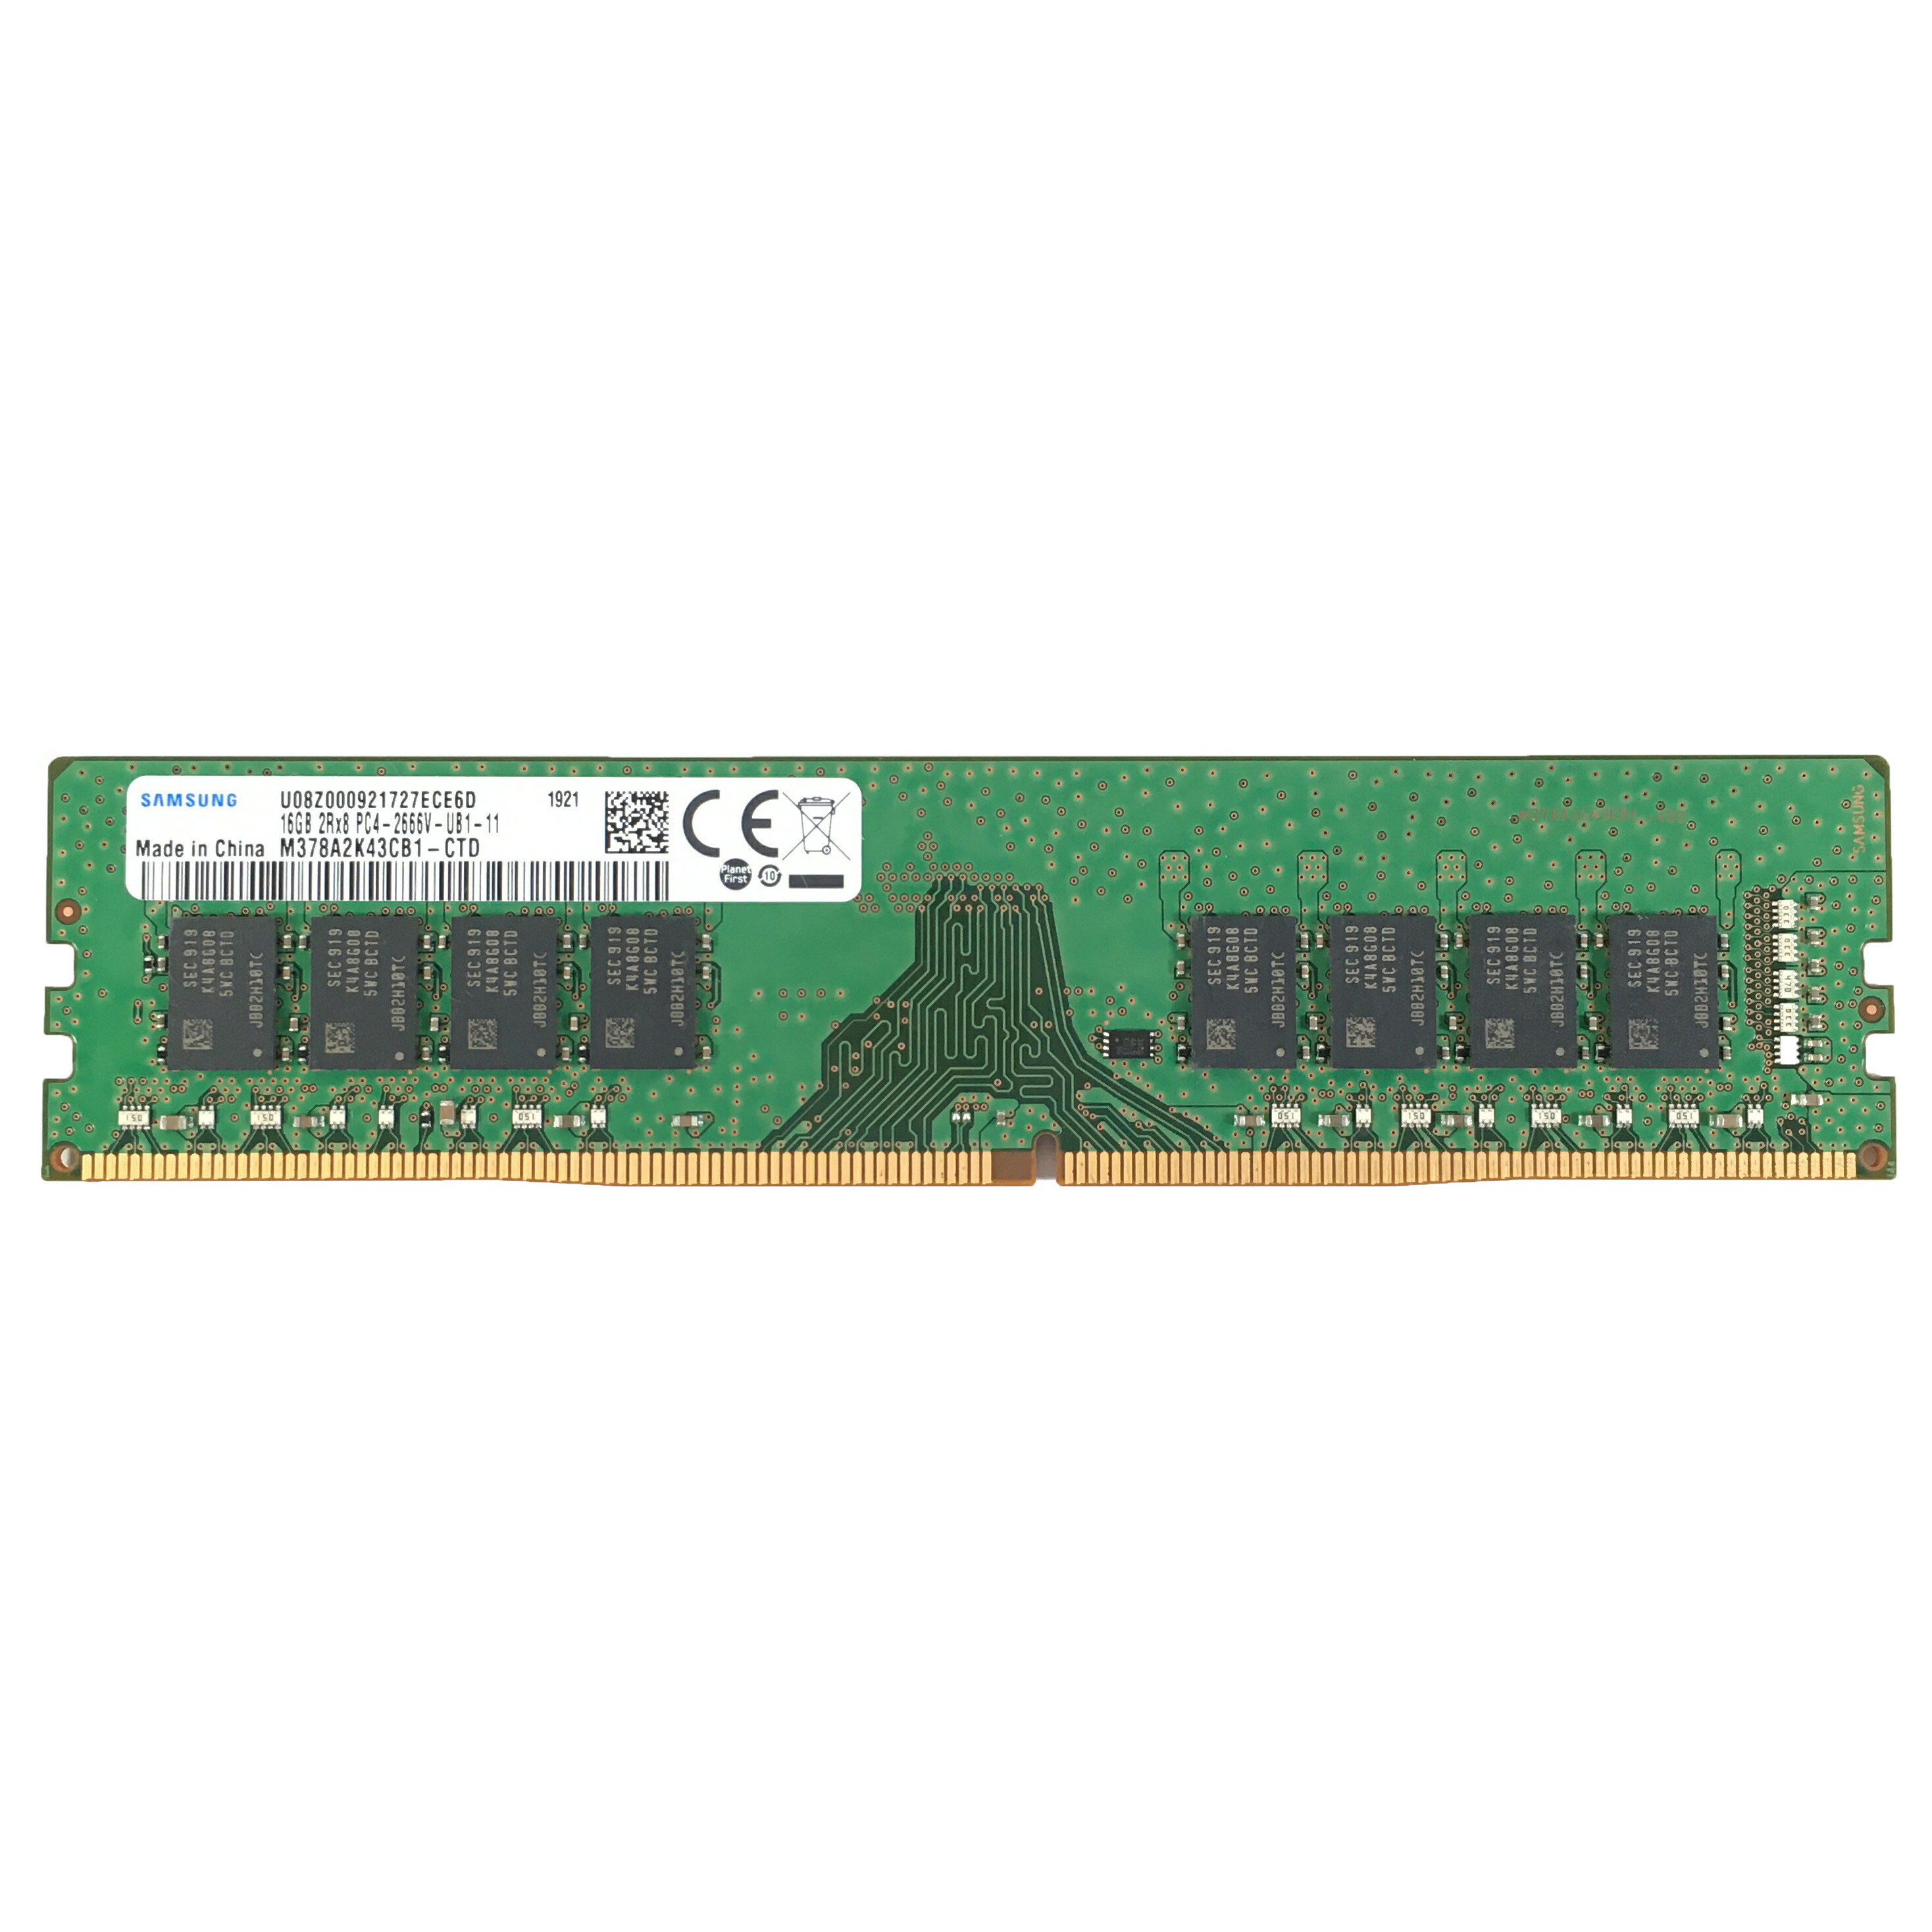 【新品】DDR4 2666 16GB SAMSUNG Original [SAMSUNG ORIGINAL] サムスン純正  デスクトップ用メモリ PC4-21300 DDR4-2666 288pin CL11 (16GB) 電電便